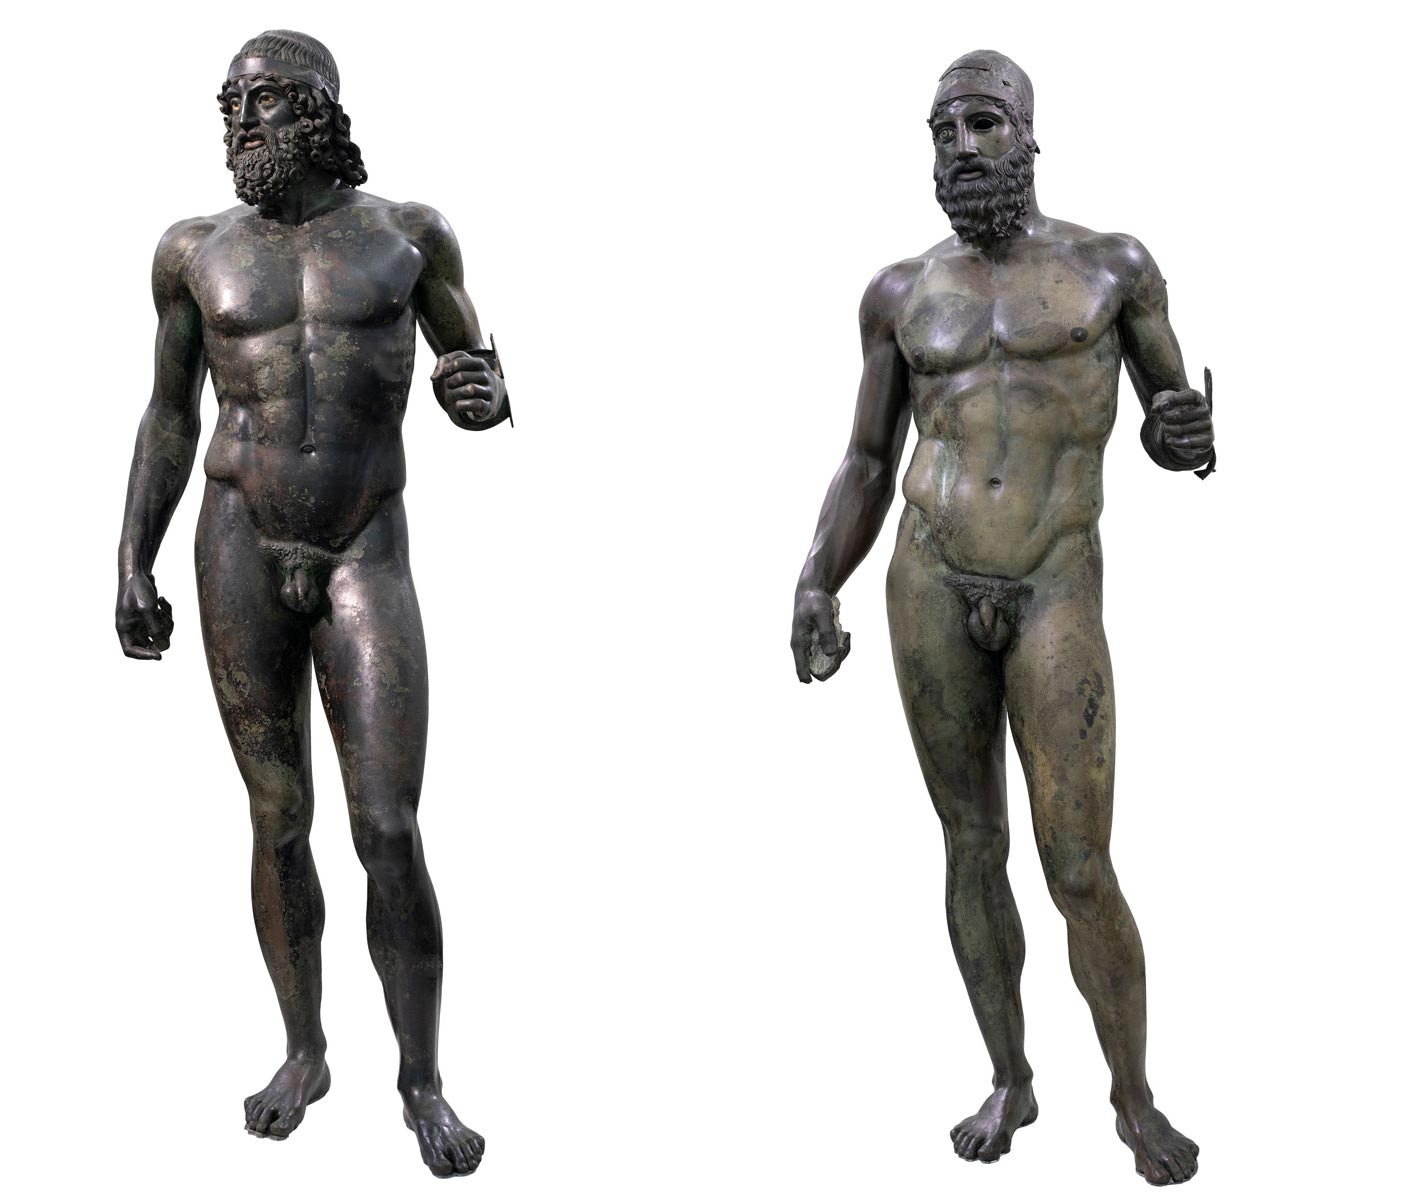 Artista ignoto, Bronzi di Riace (V secolo a.C.; bronzo, 198 cm la Statua A - a sinistra - , 197 cm la Statua B - a destra; Reggio Calabria, Museo Archeologico Nazionale)